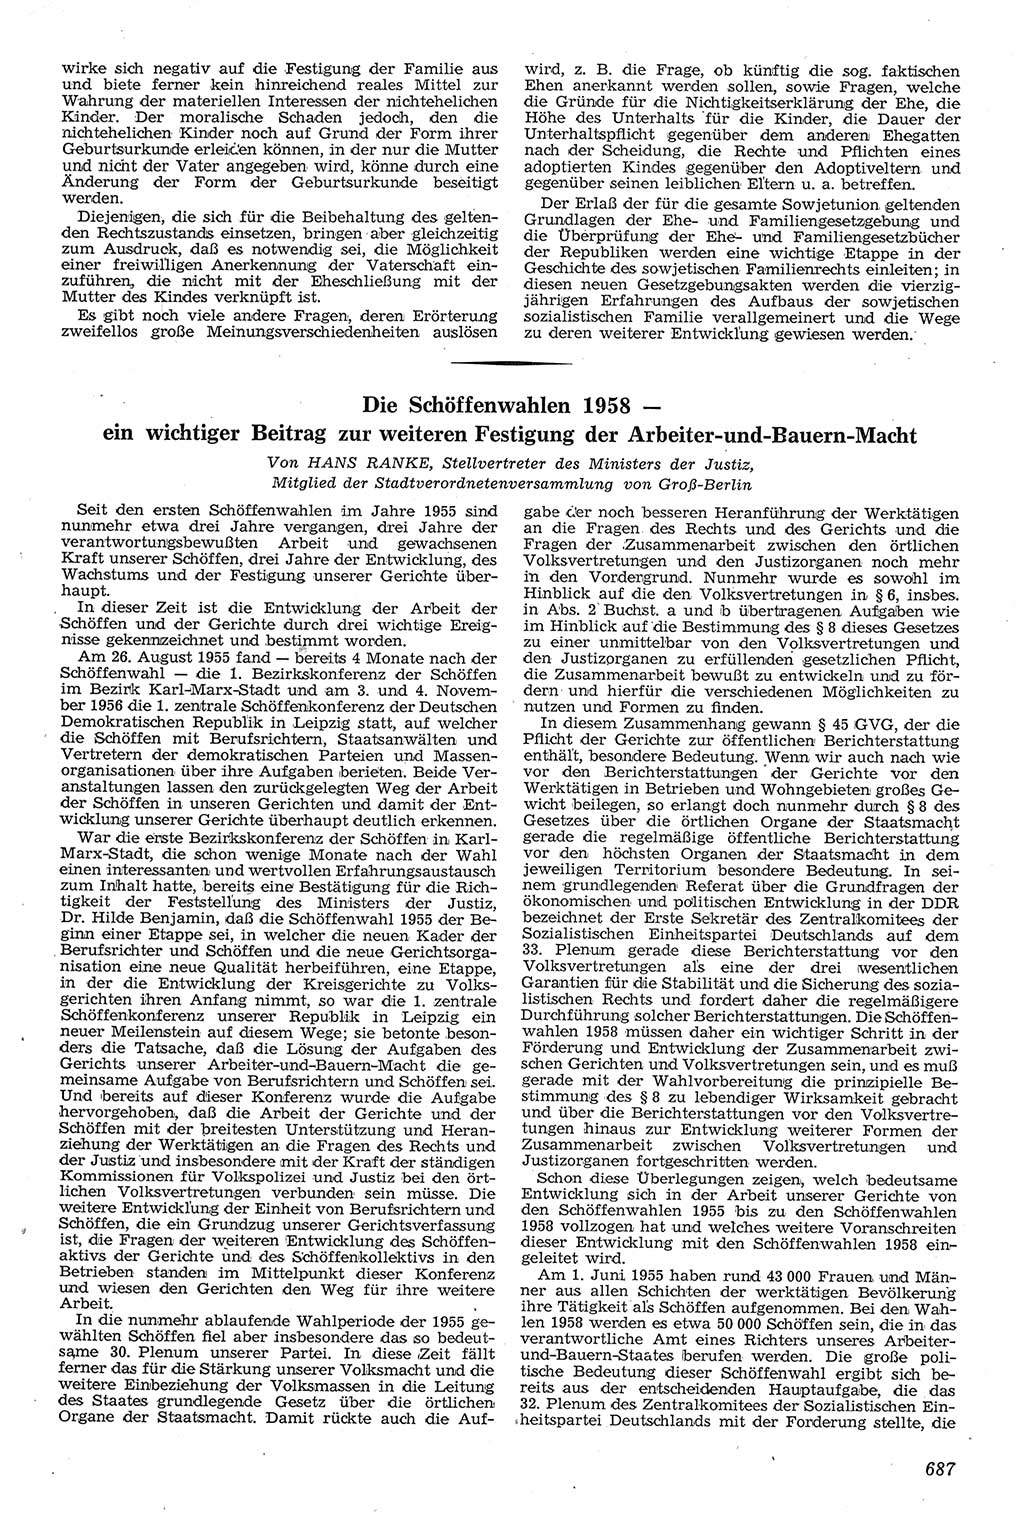 Neue Justiz (NJ), Zeitschrift für Recht und Rechtswissenschaft [Deutsche Demokratische Republik (DDR)], 11. Jahrgang 1957, Seite 687 (NJ DDR 1957, S. 687)